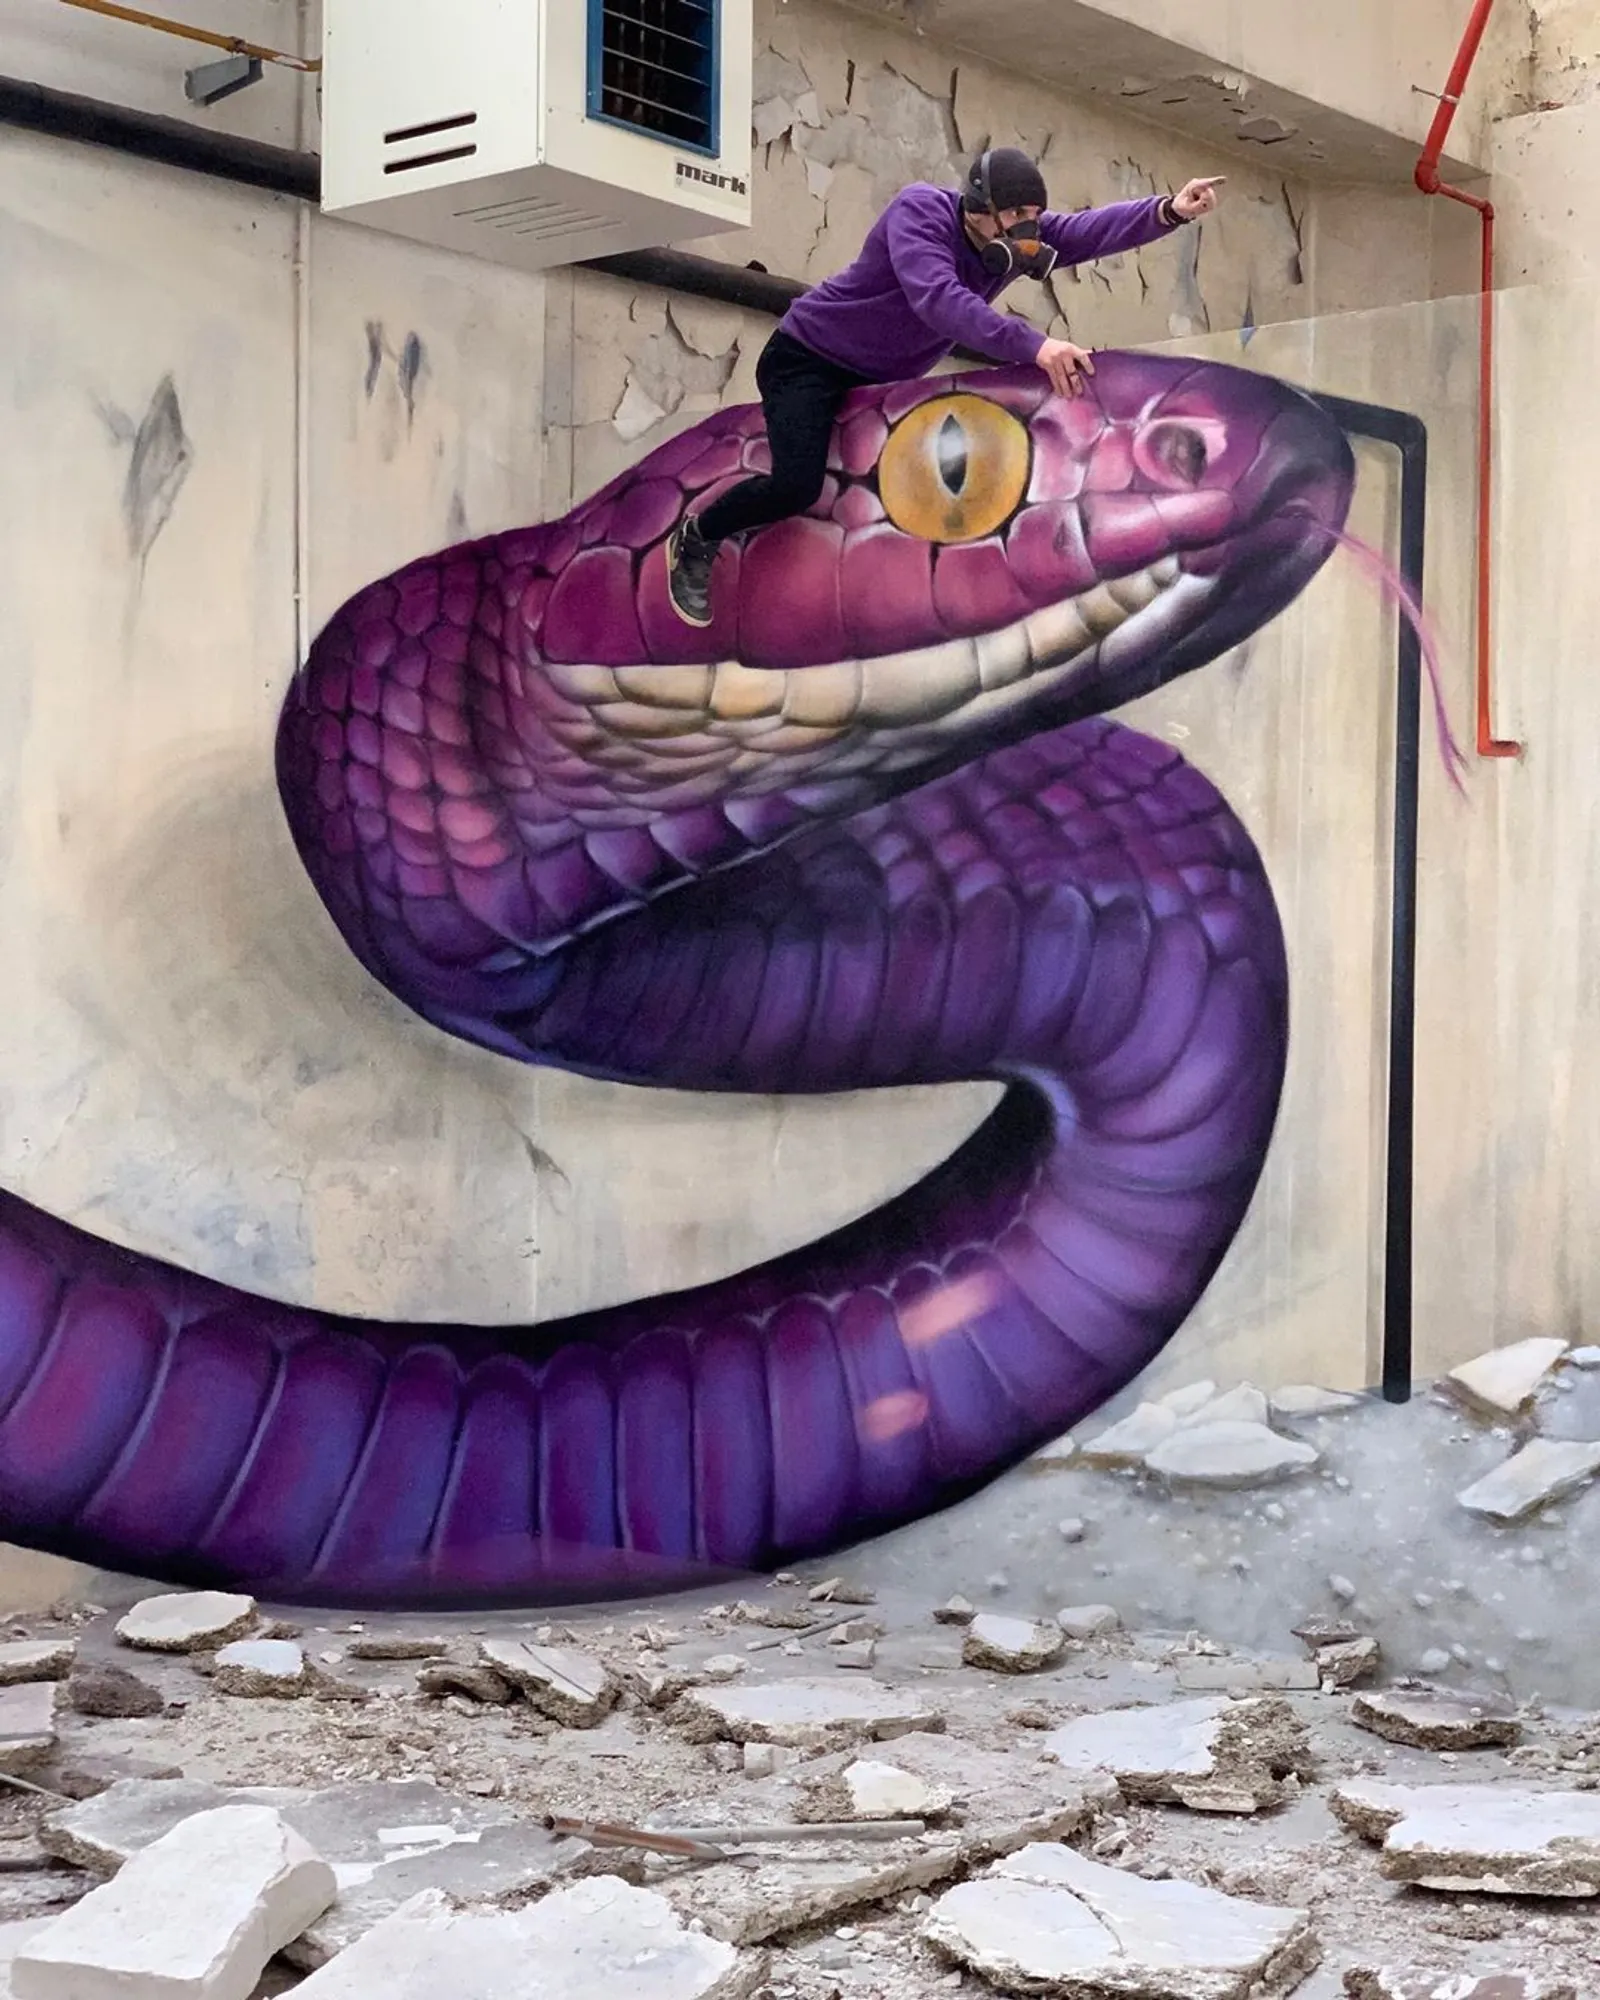 Aesthetic dan Keren, 20 Mural Ini Jadi Spot Favorit yang Instagramable